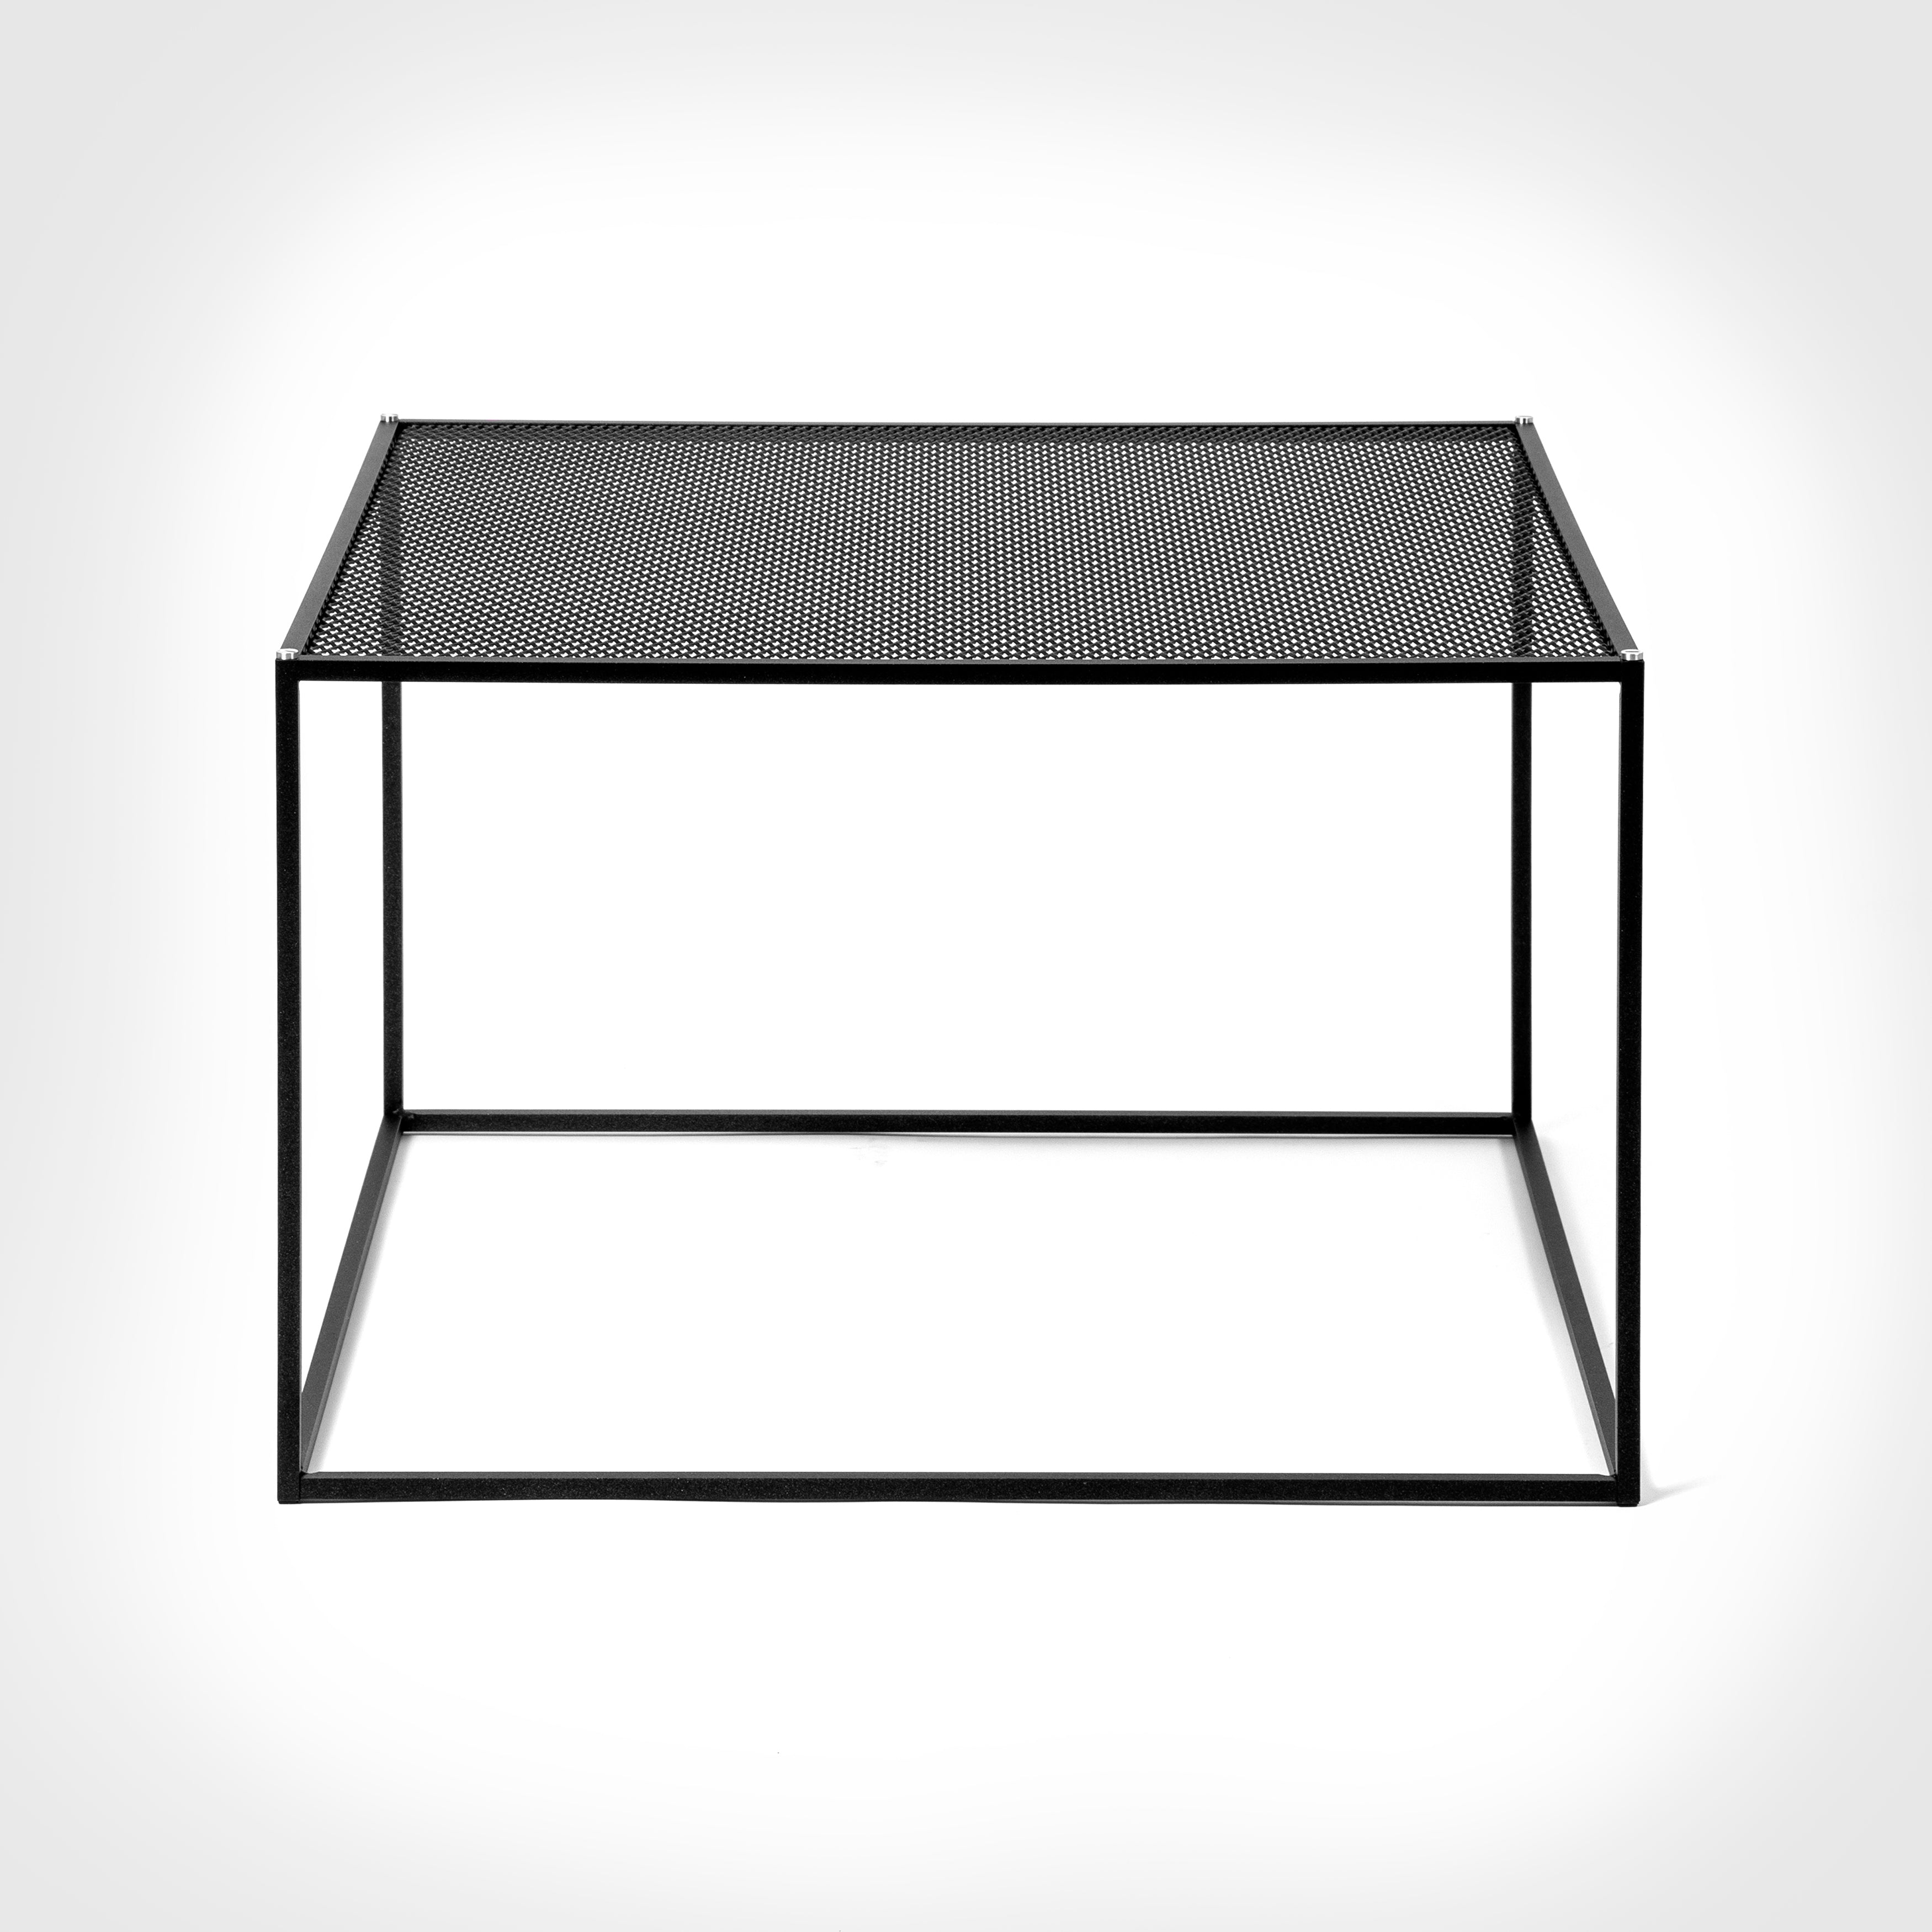 Firkantet sort sofabord med bordplade i meshed/hullet mønster. Vælg mellem detaljer/skruer i messing eller stål (medfølger).